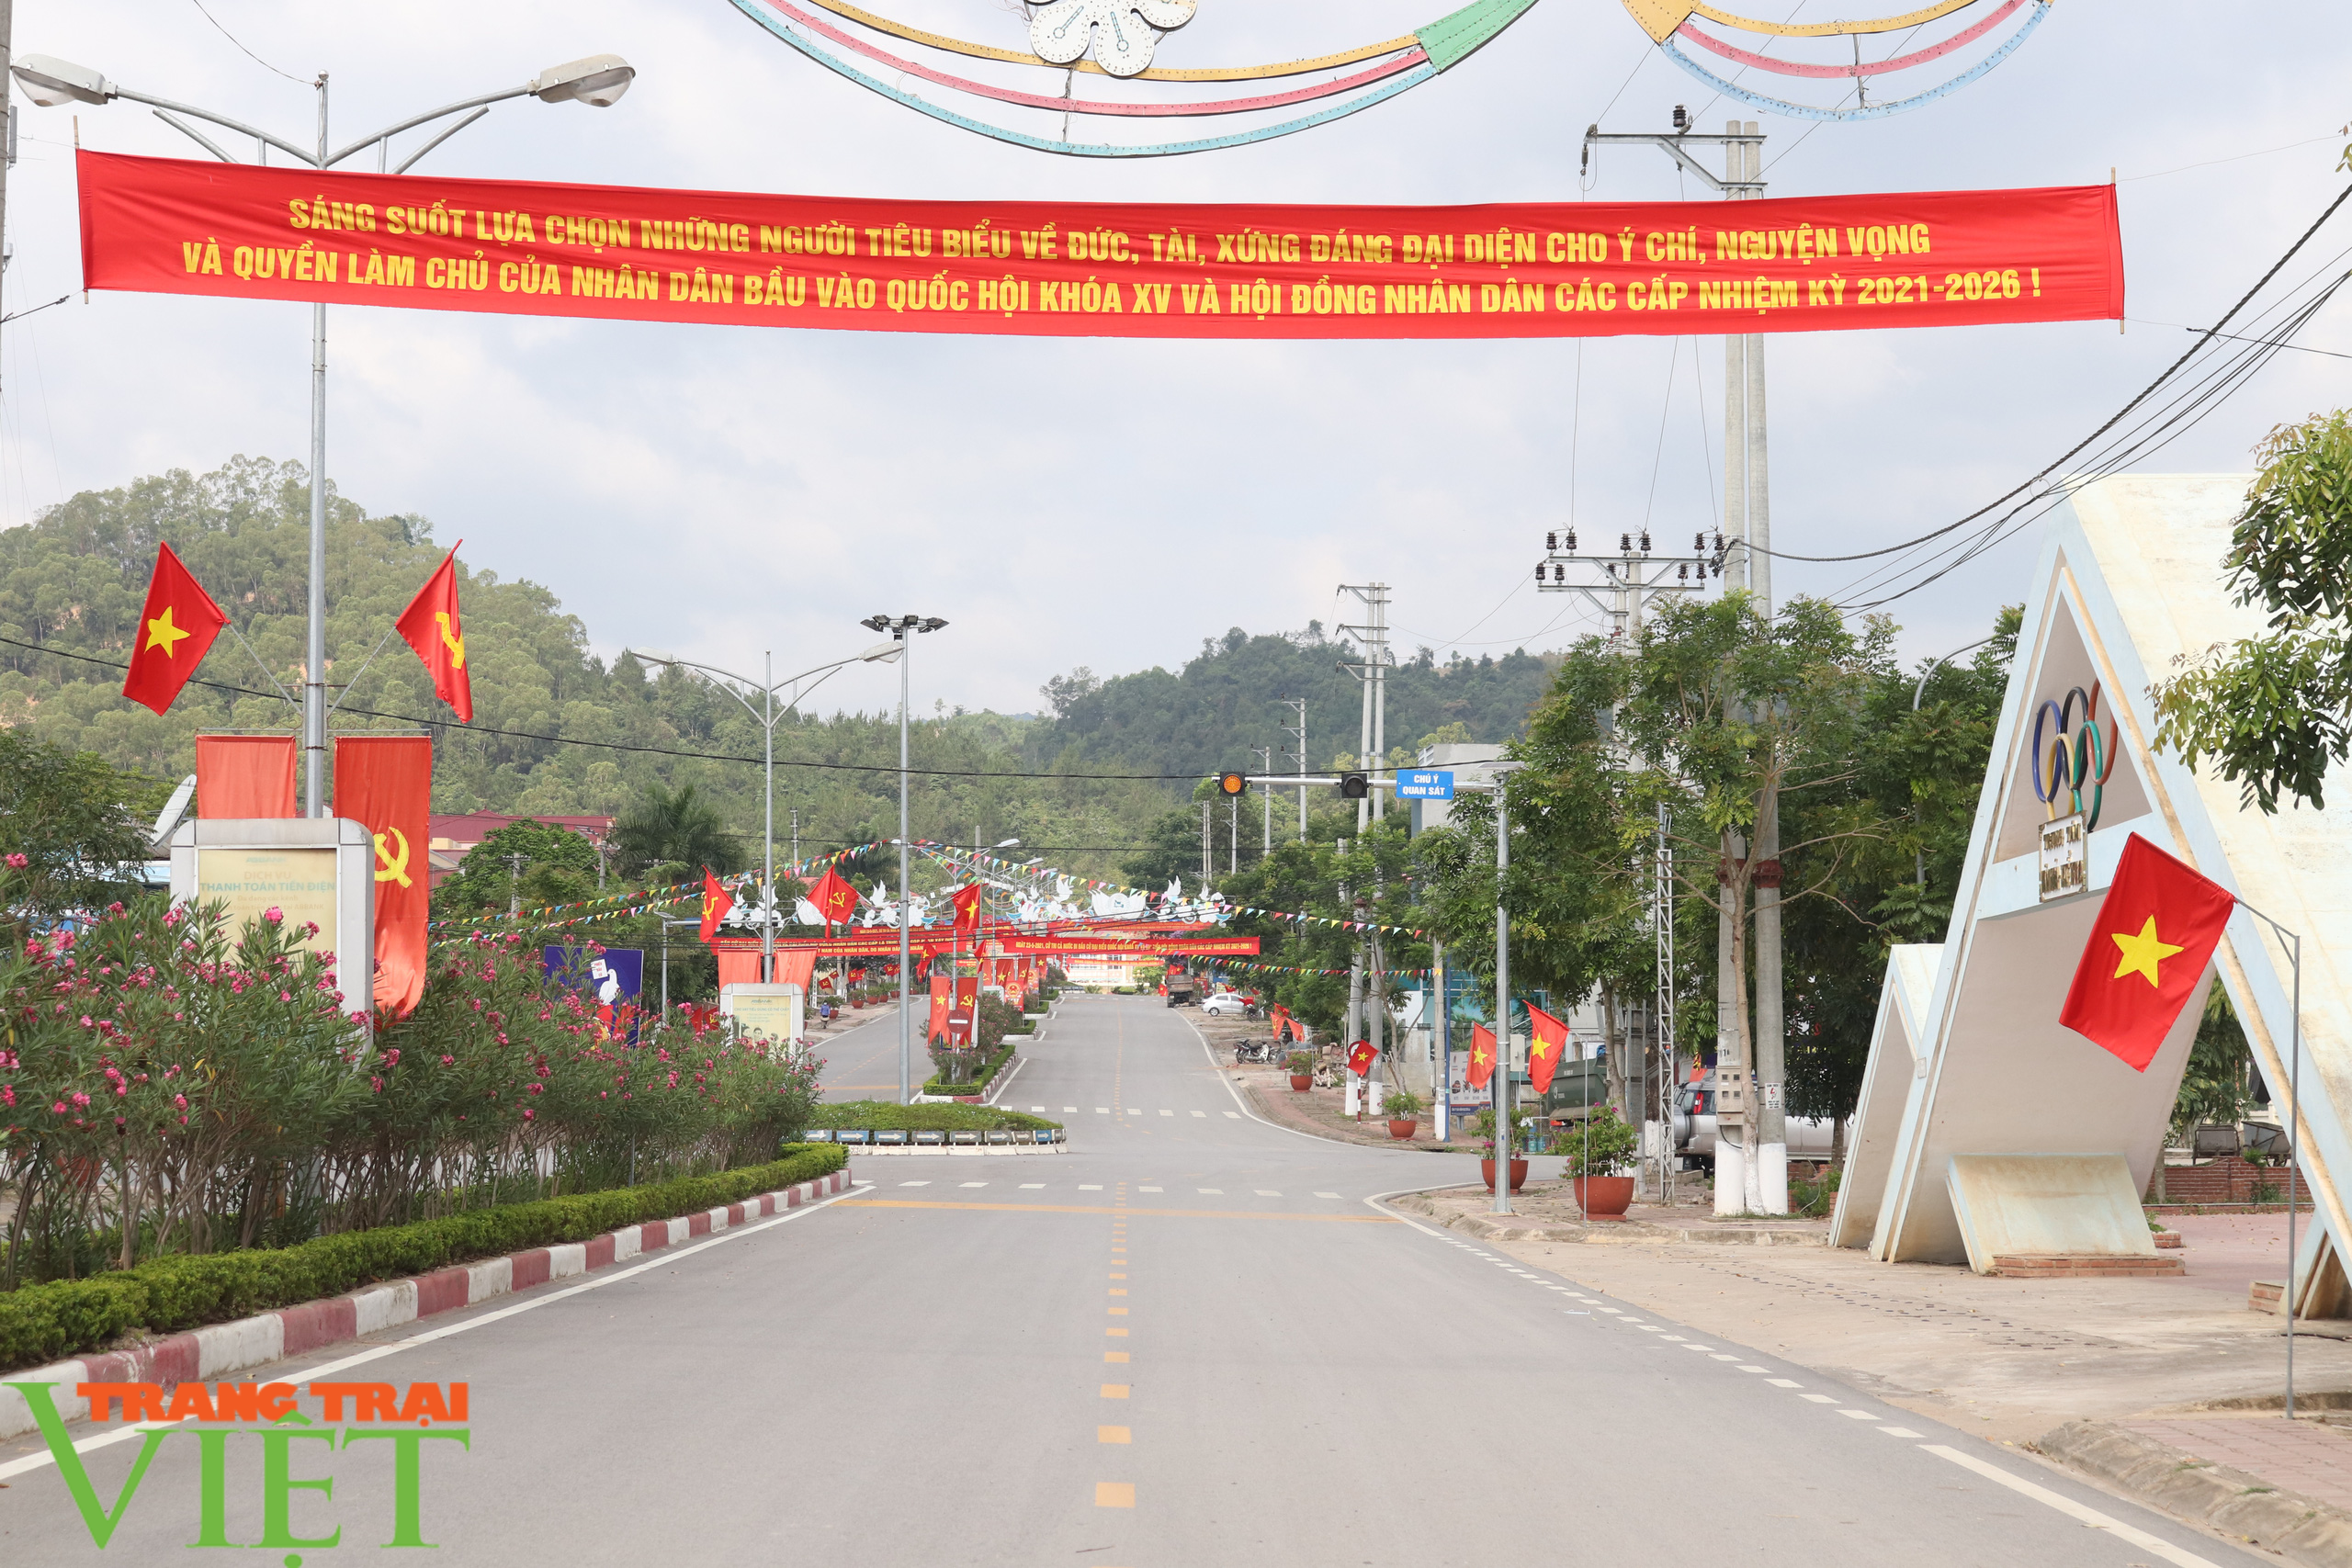 Phó Chủ tịch Thường trực UBND tỉnh Sơn La kiểm tra công tác bầu cử tại huyện biên giới Sốp Cộp  - Ảnh 5.